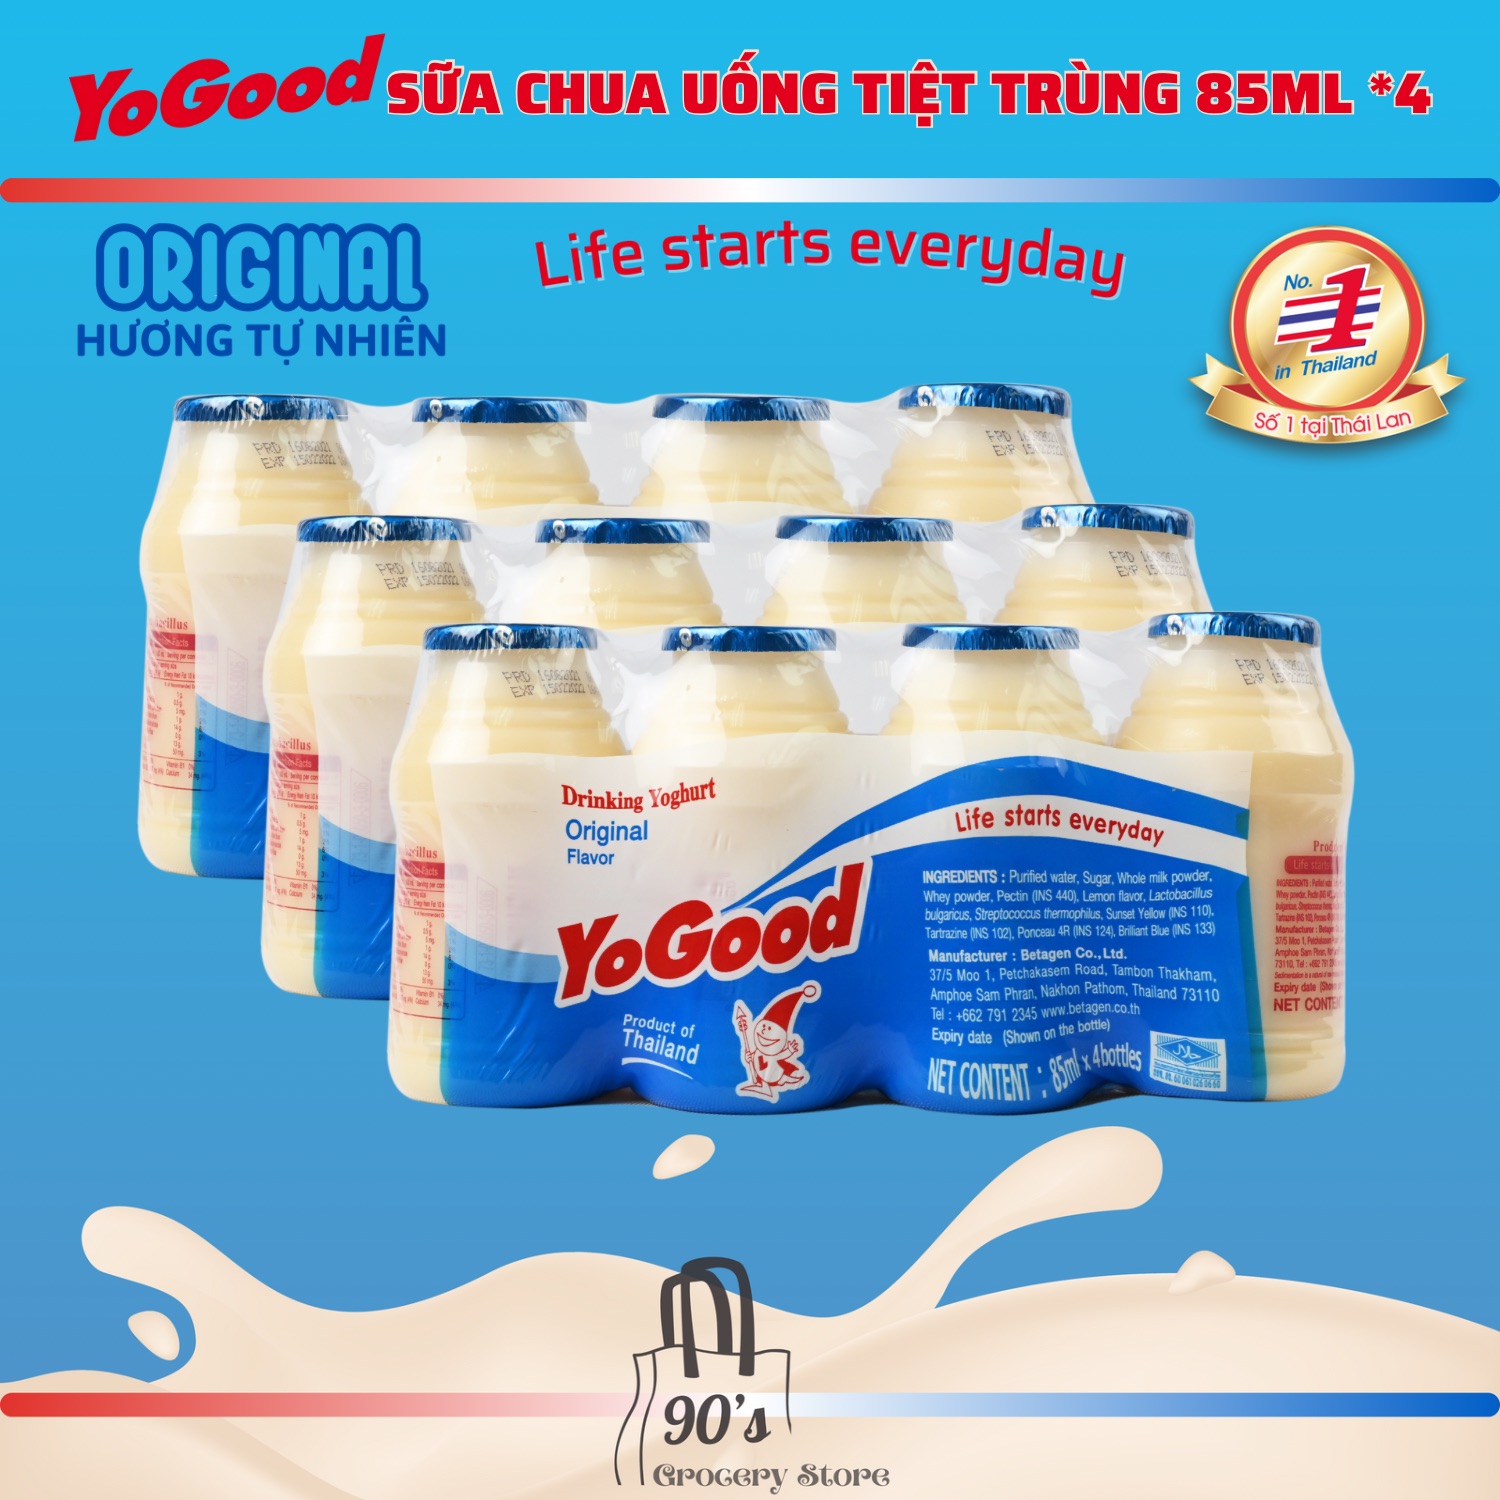 90 s Grocery Store SỮA CHUA UỐNG TIỆT TRÙNG YOGOOD 85ML 4